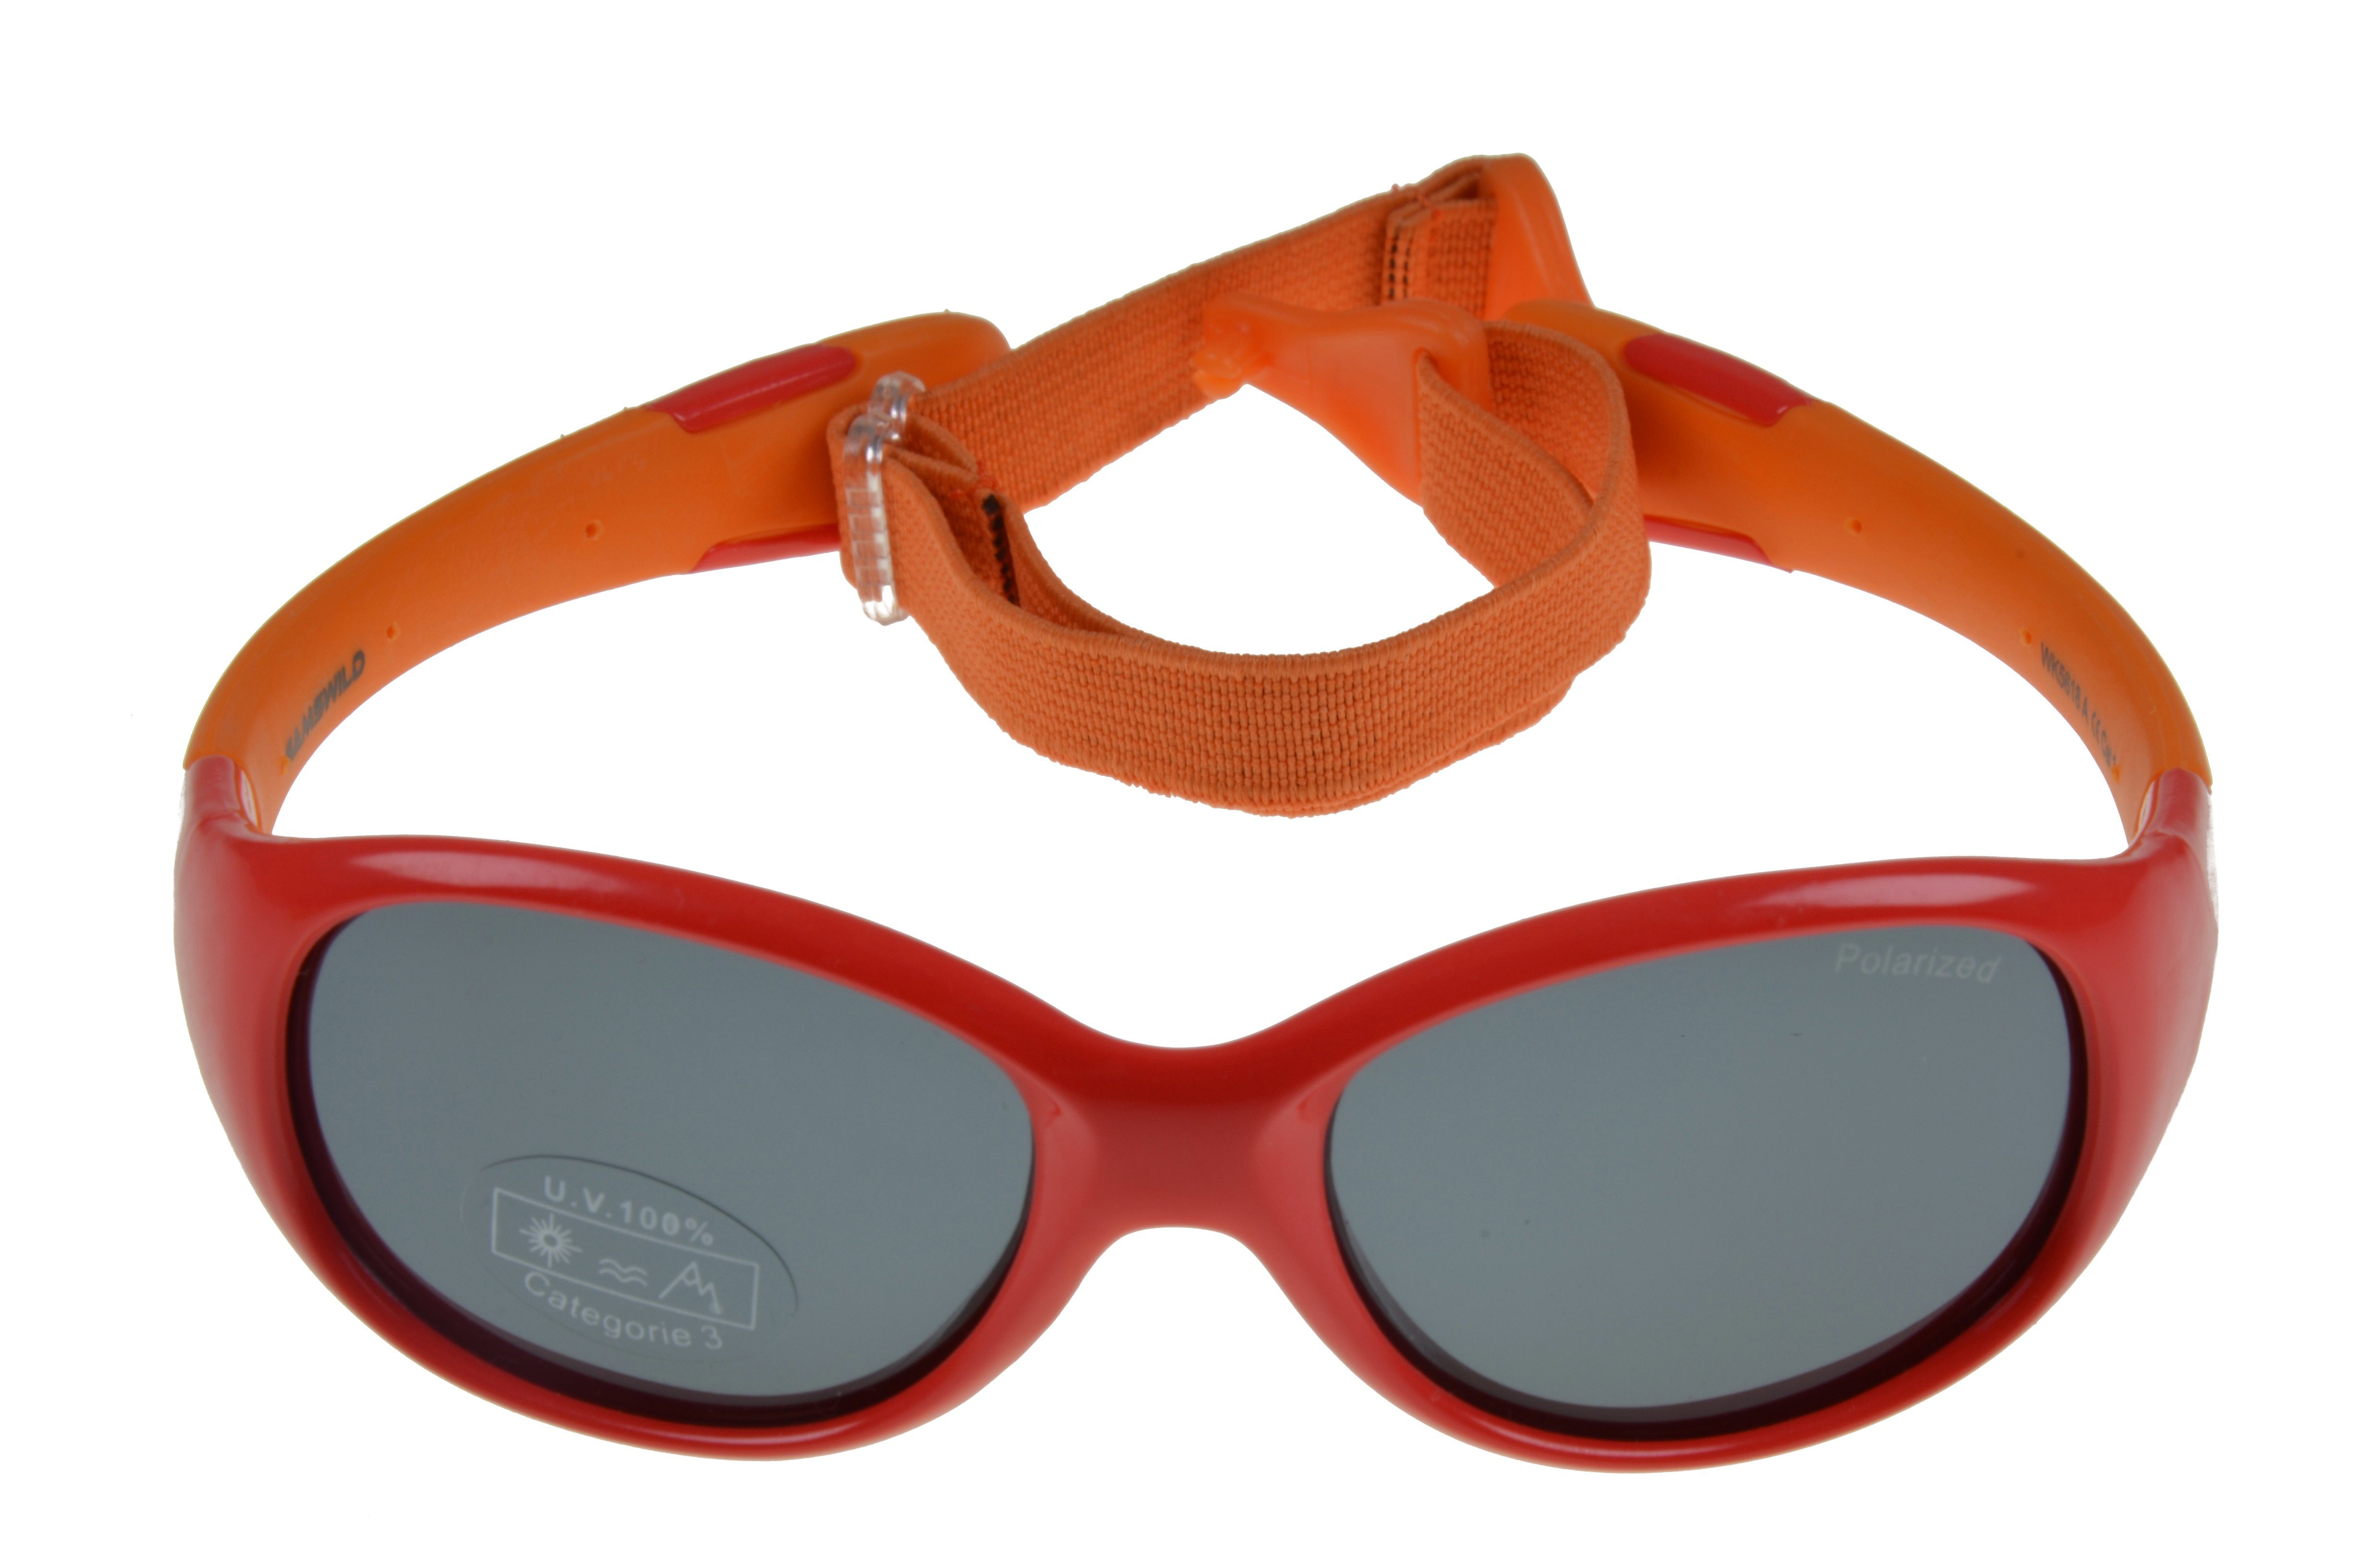 Sonnenbrille Gamswild Kleinkindbrille grün, Unisex, rosa, Jahre incl. kids Mädchen Jungen Kinderbrille Brillenband 2-5 GAMSKIDS rot-orange WK5618